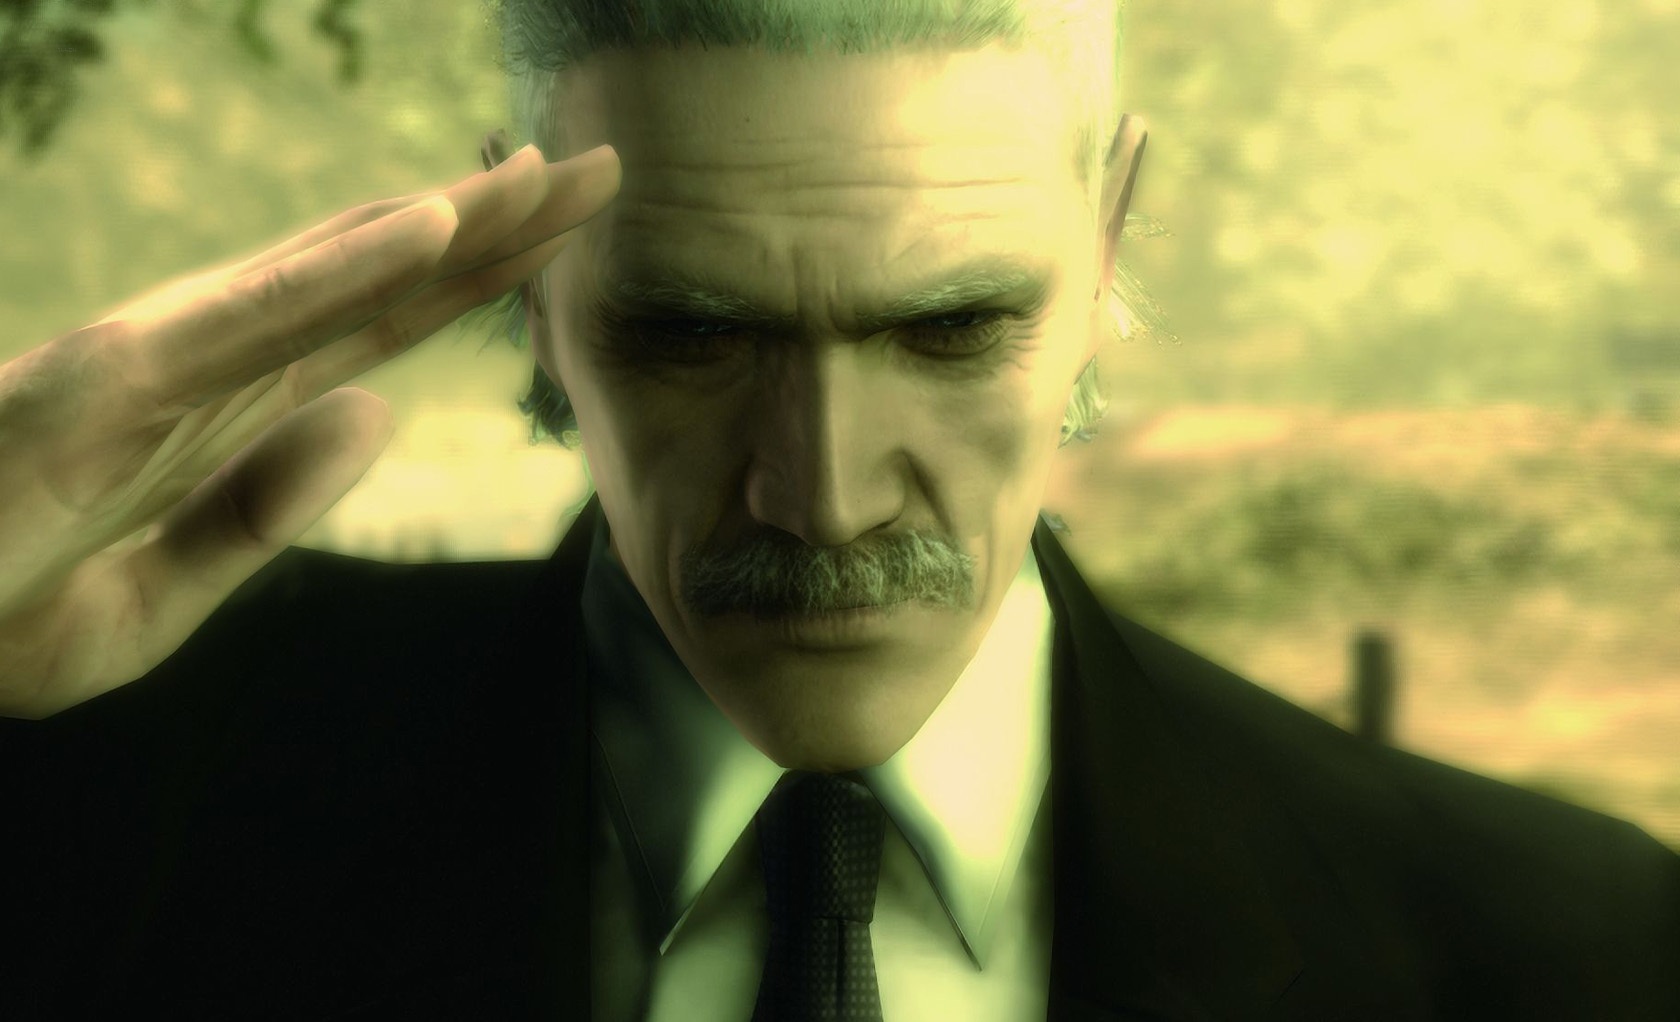 Metal Gear Solid 4 sekarang hampir dapat dimainkan di Versi Baru dari PlayStation 3 Emulator - Gameplay Video dalam 4K